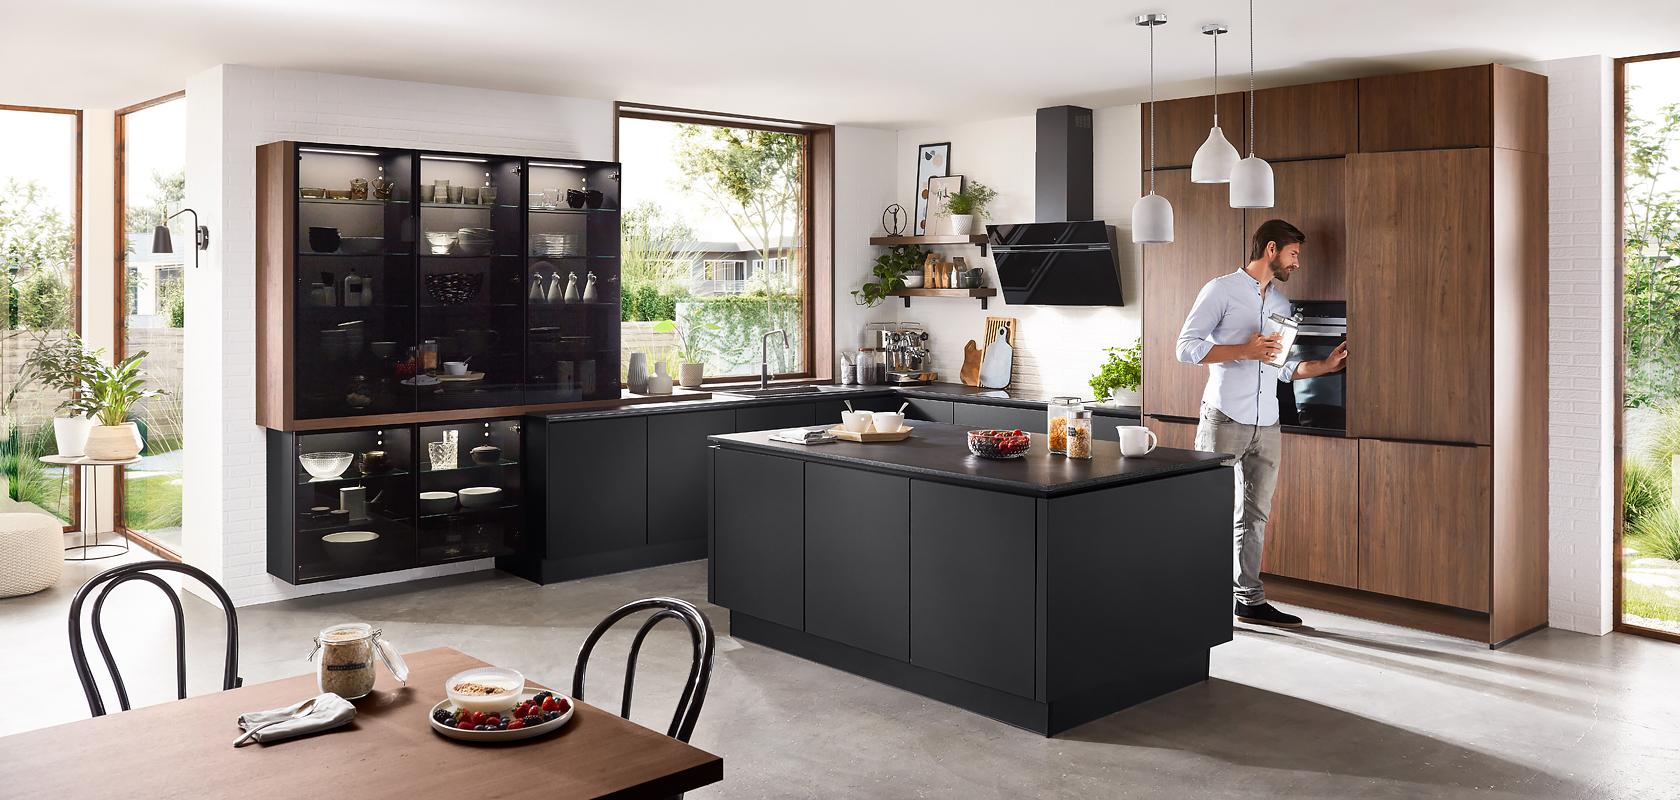 Interior de cocina moderna con elegantes gabinetes negros, acentos de madera y un hombre preparando una bebida en la encimera, creando un ambiente hogareño pero contemporáneo.